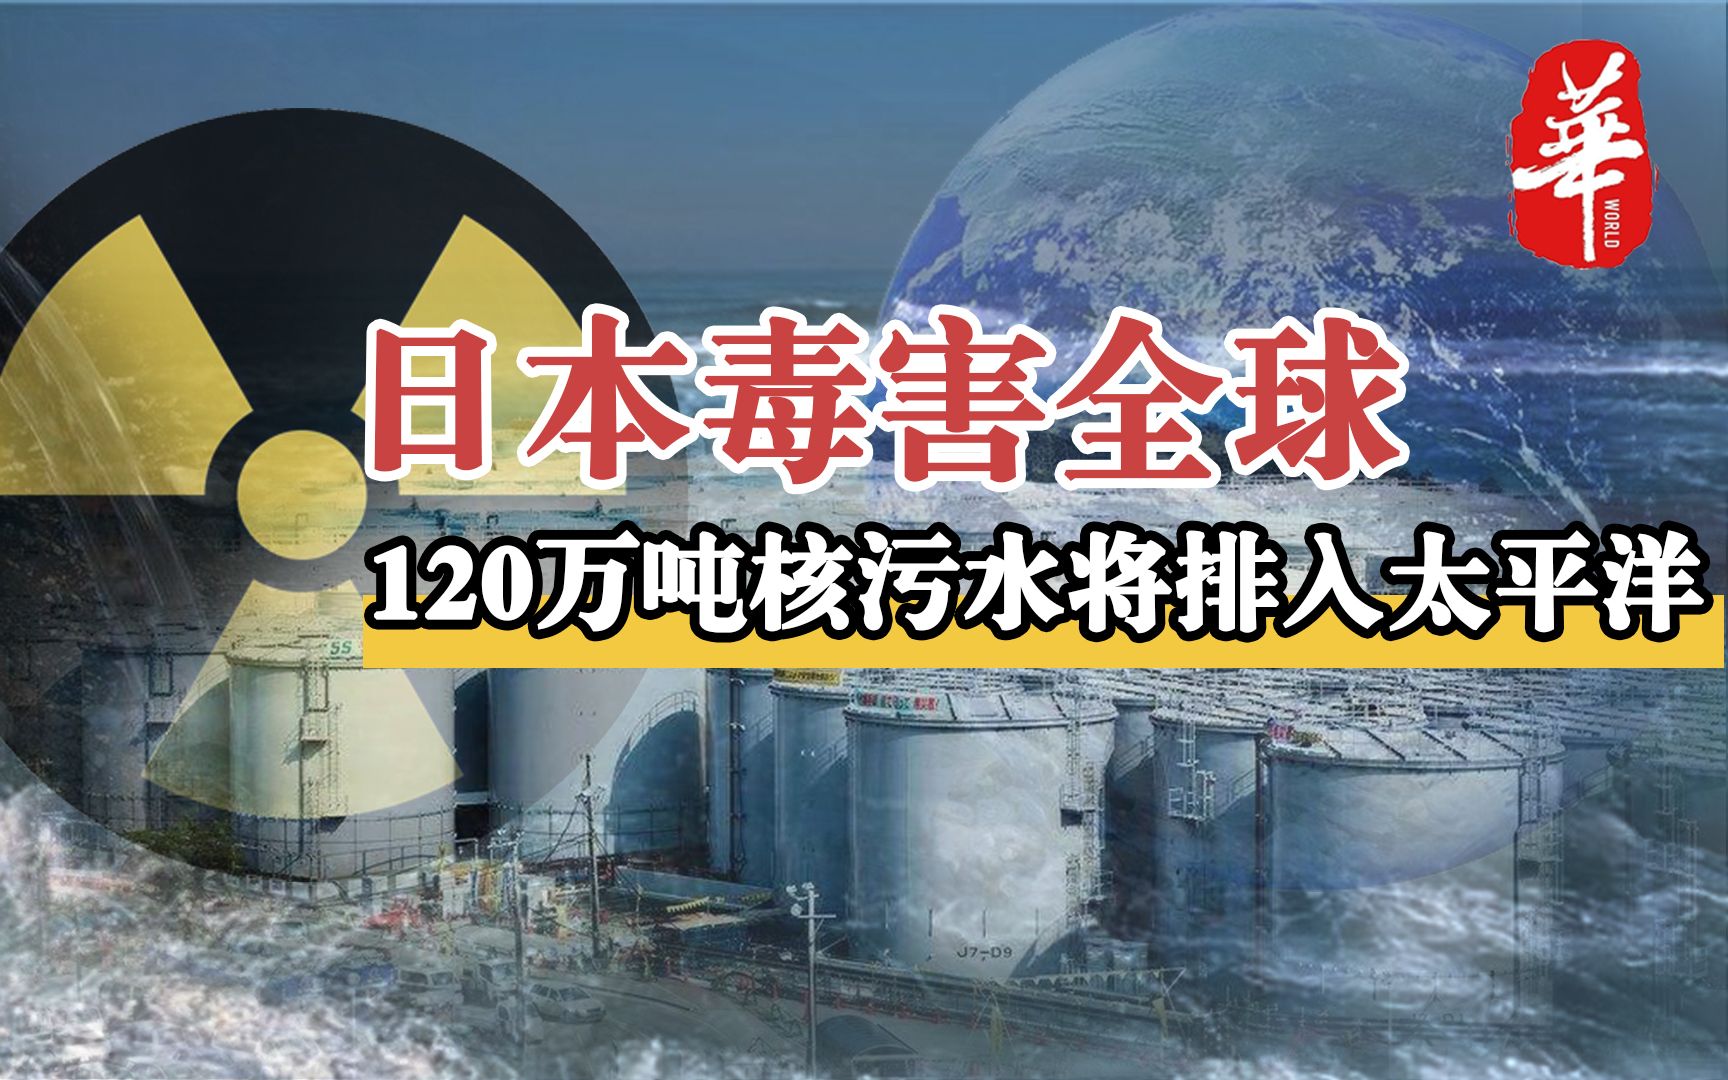 日本要把120万吨核污水排入太平洋后果会有多严重